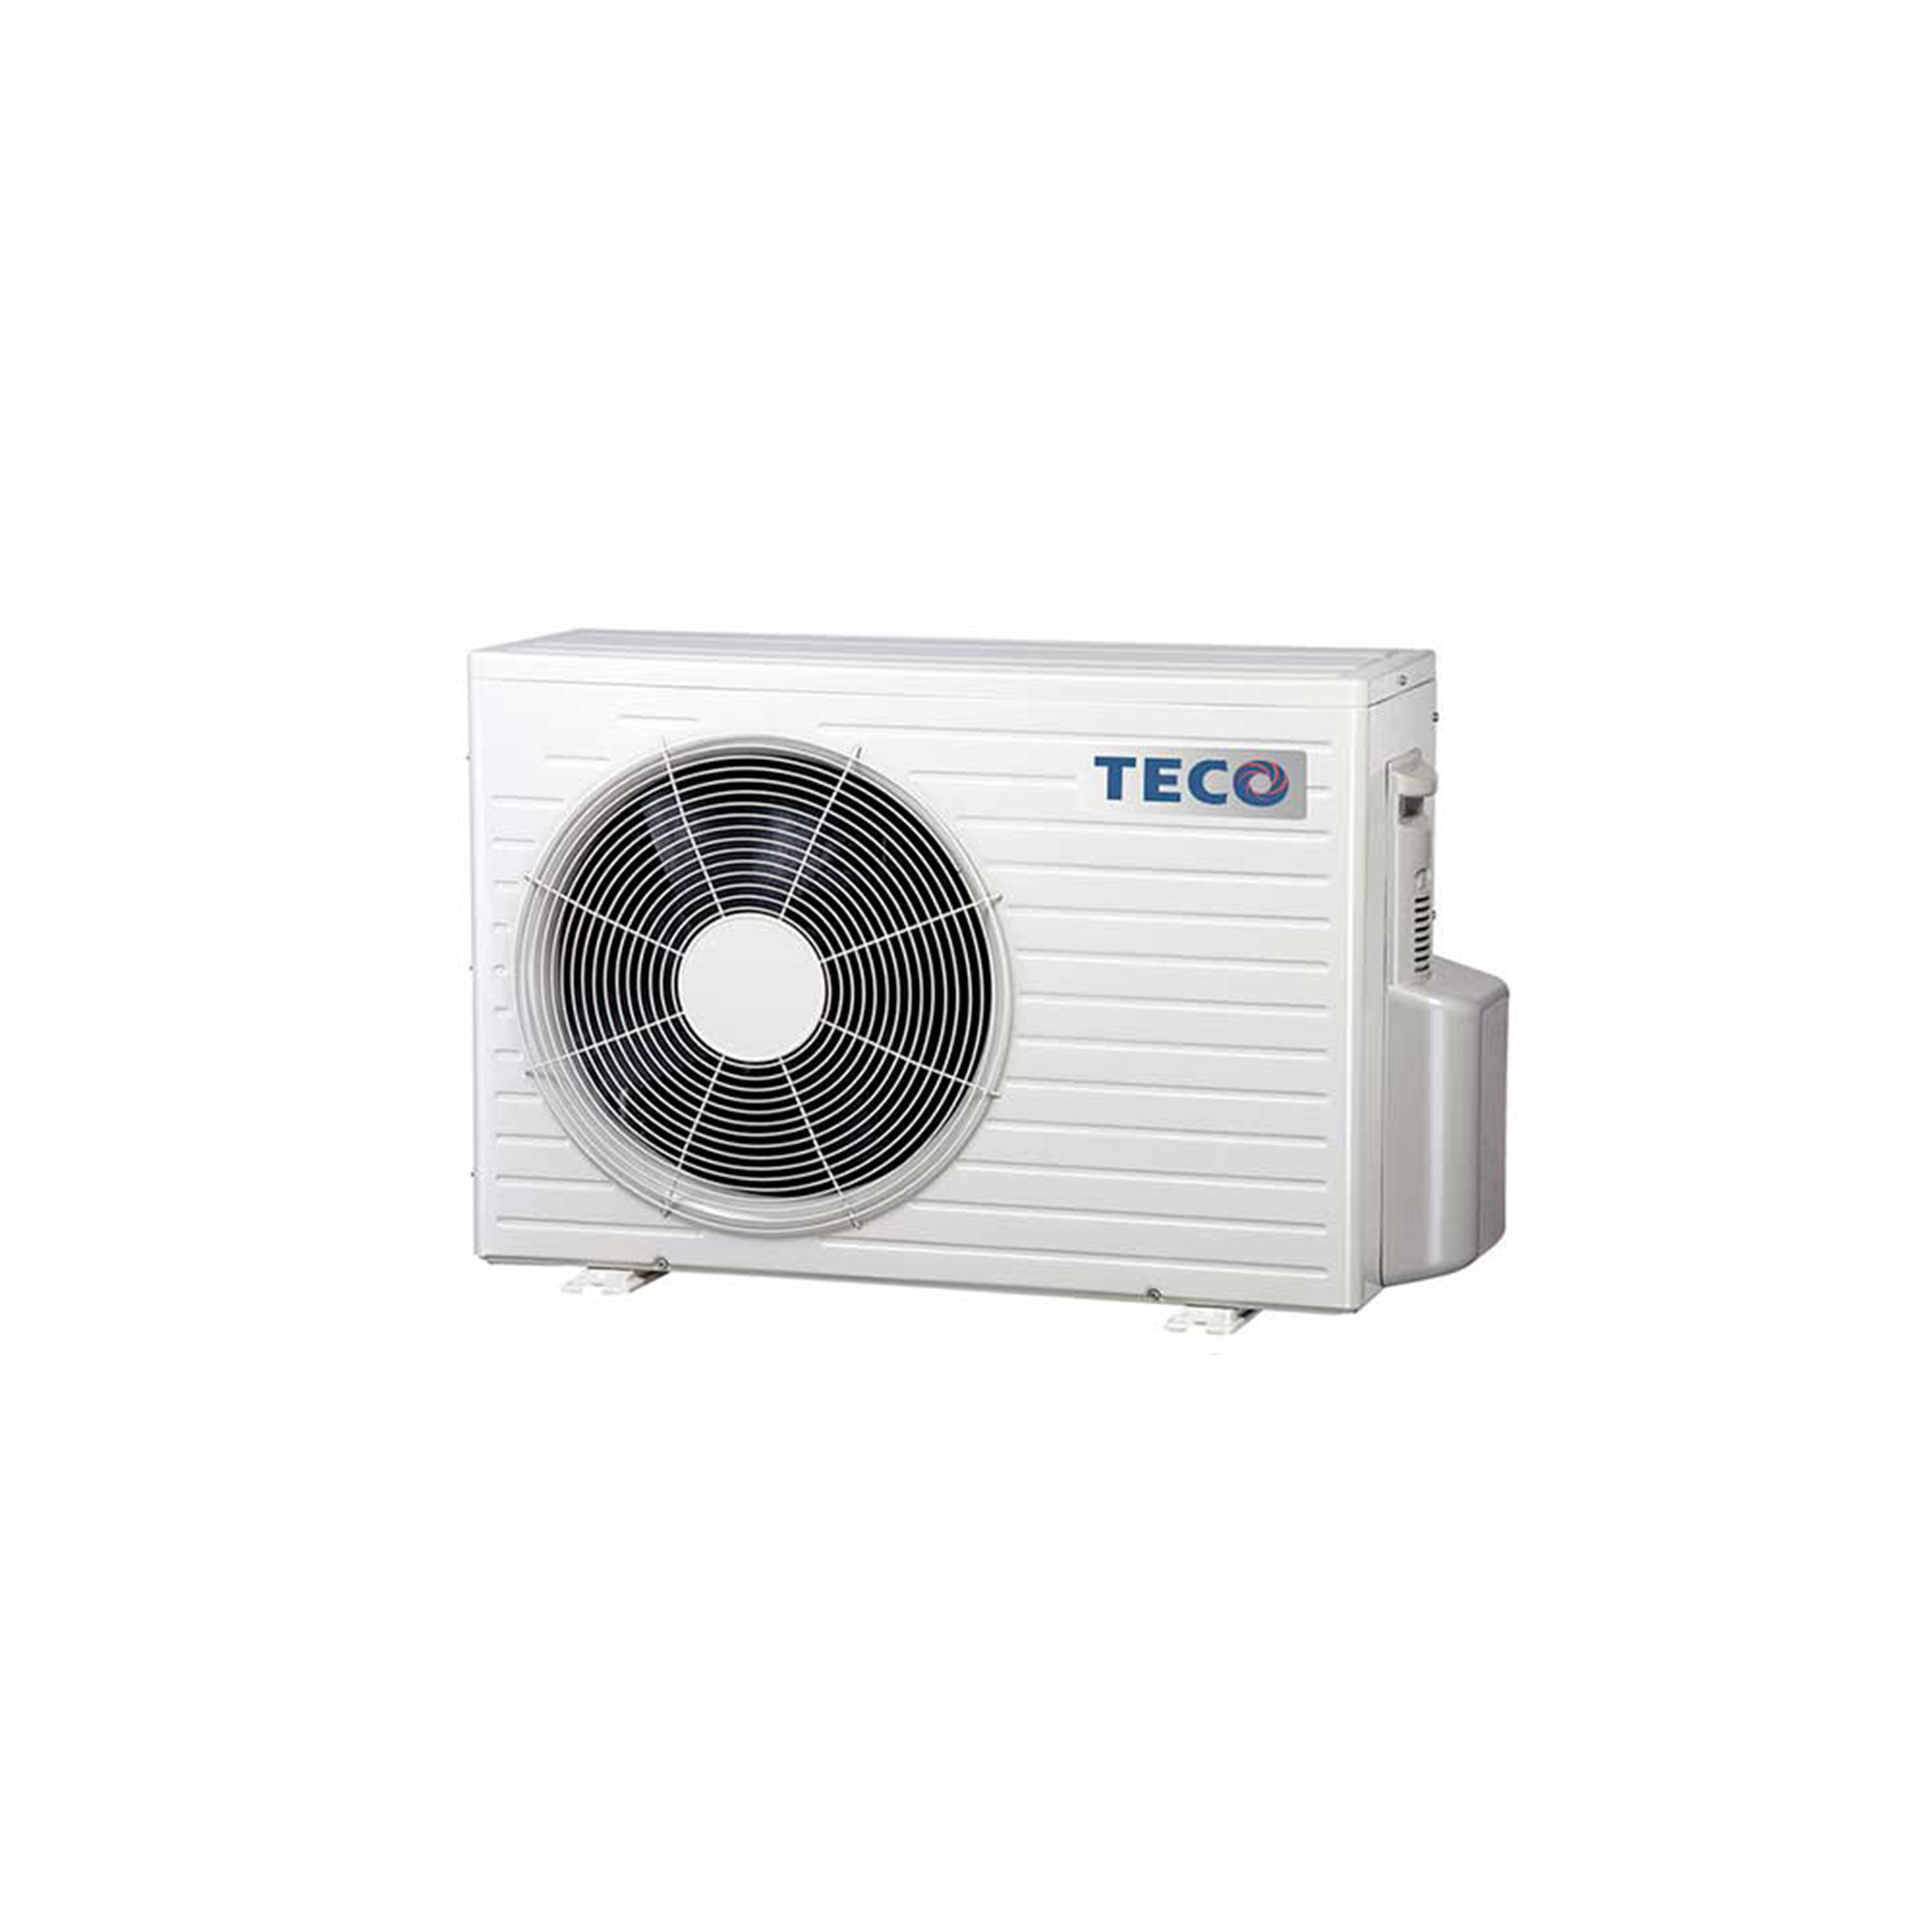 TECO東元 變頻冷暖一對一分離式空調 MS28IH-ZRSMA28IH-ZRS 4-5坪 免卡分期